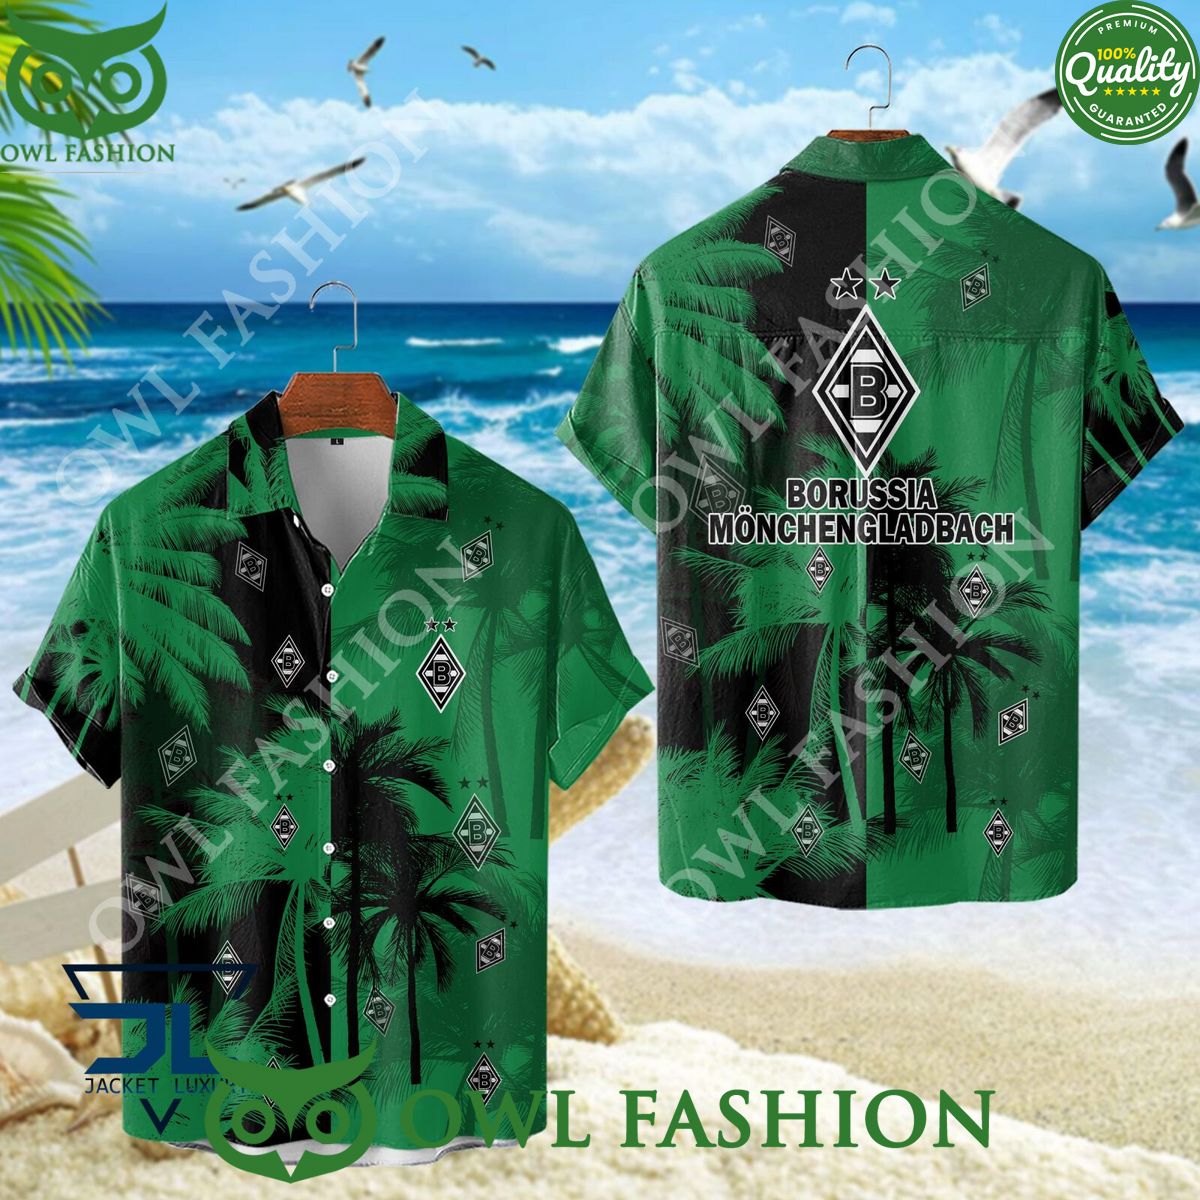 borussia monchengladbach top flight of german football green coconut hawaiian shirt 1 OMqbf.jpg